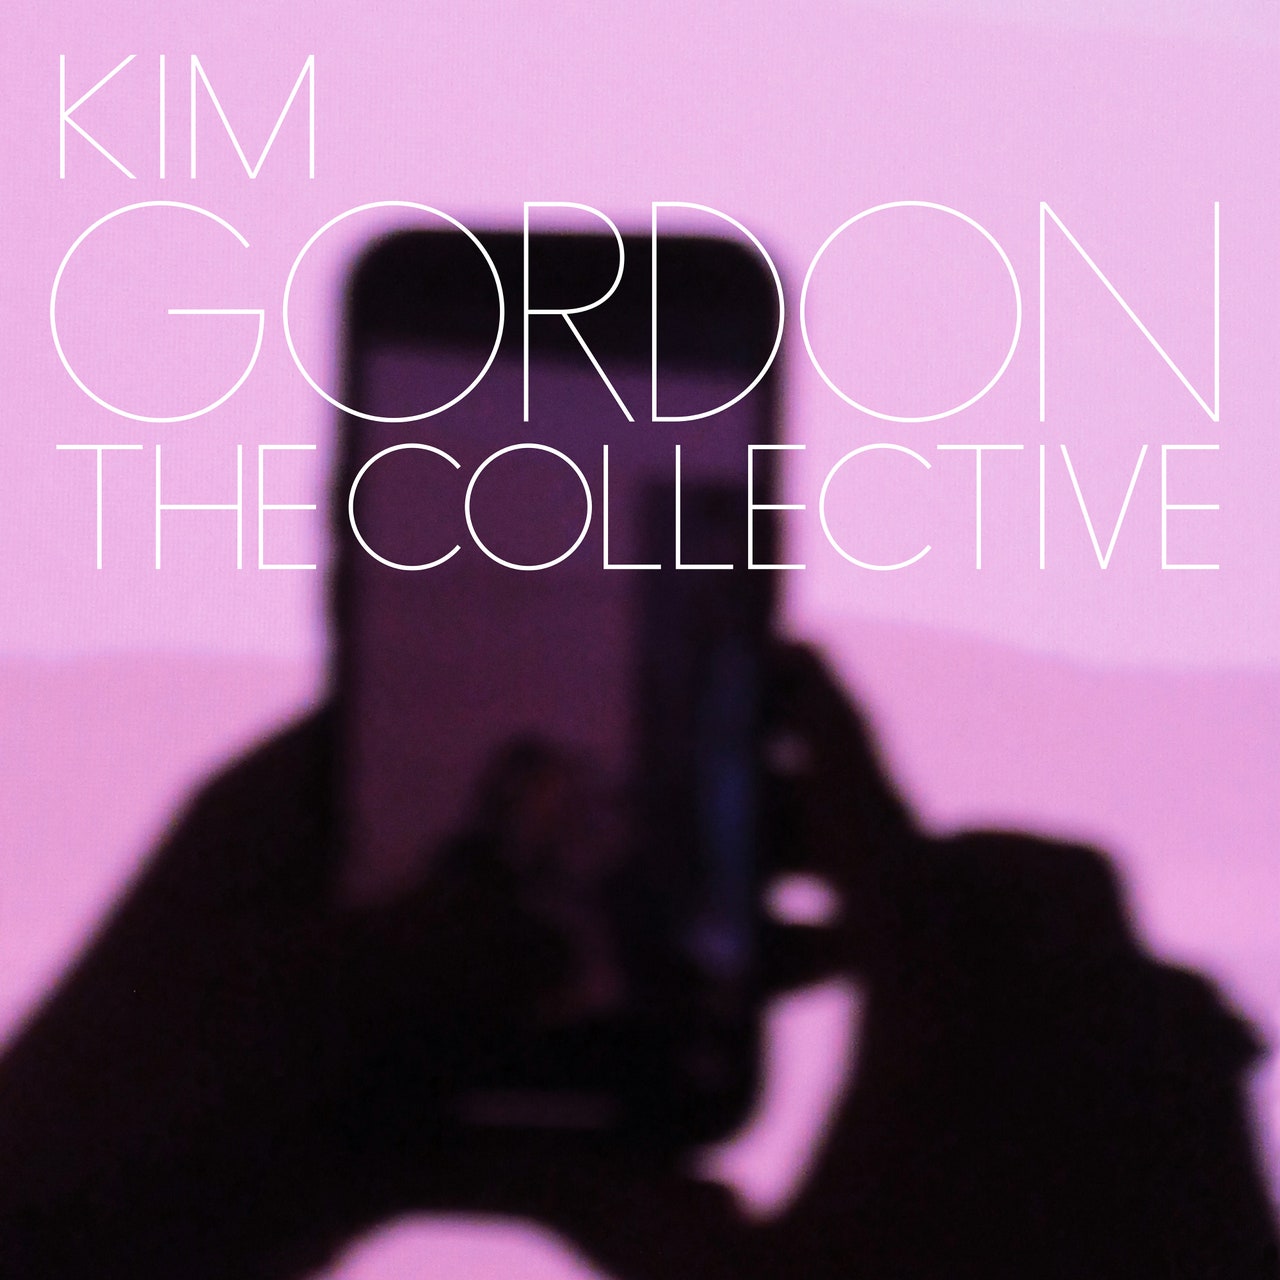 Kim Gordon: The Collective